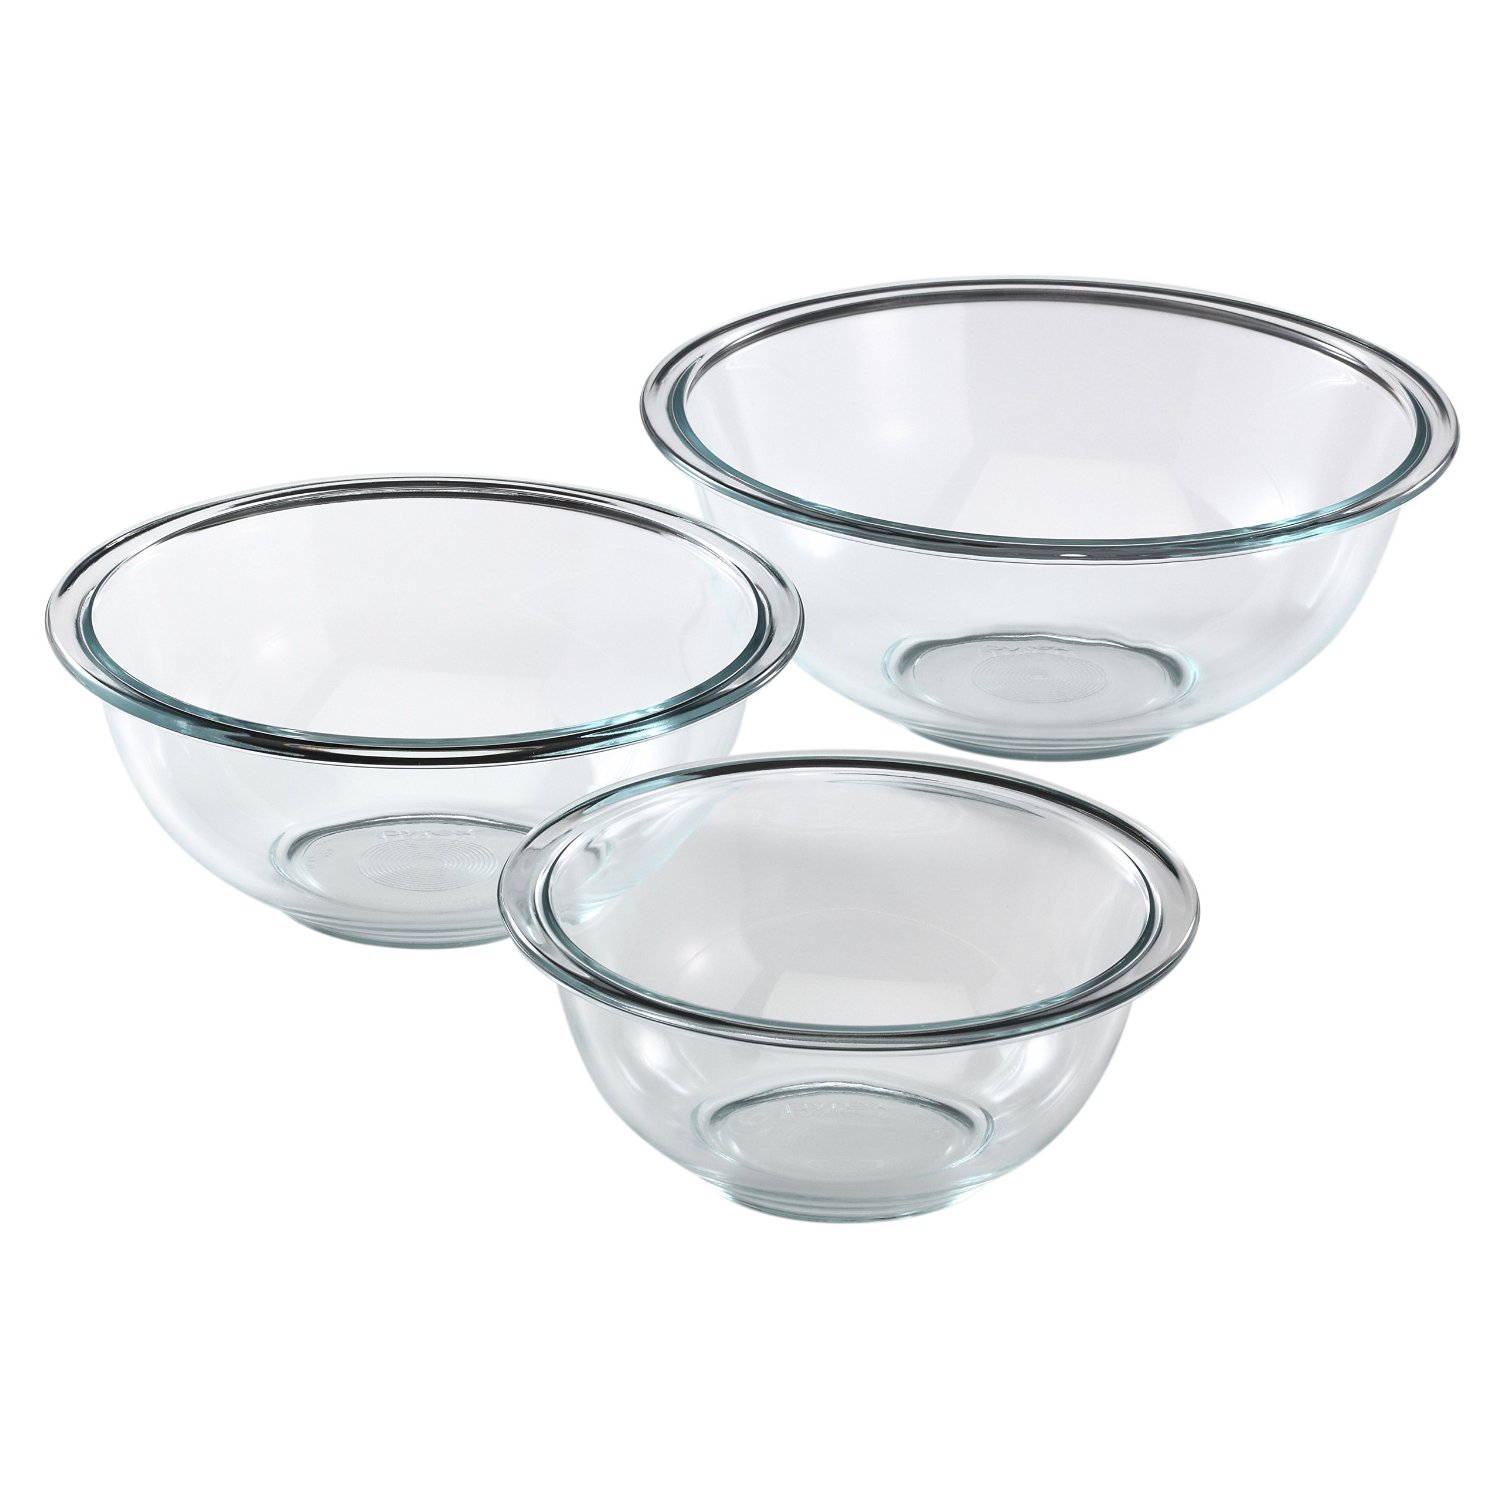 Pyrex Prepware 3-Piece Glass Mixing Bowl Set – Just $12.49!